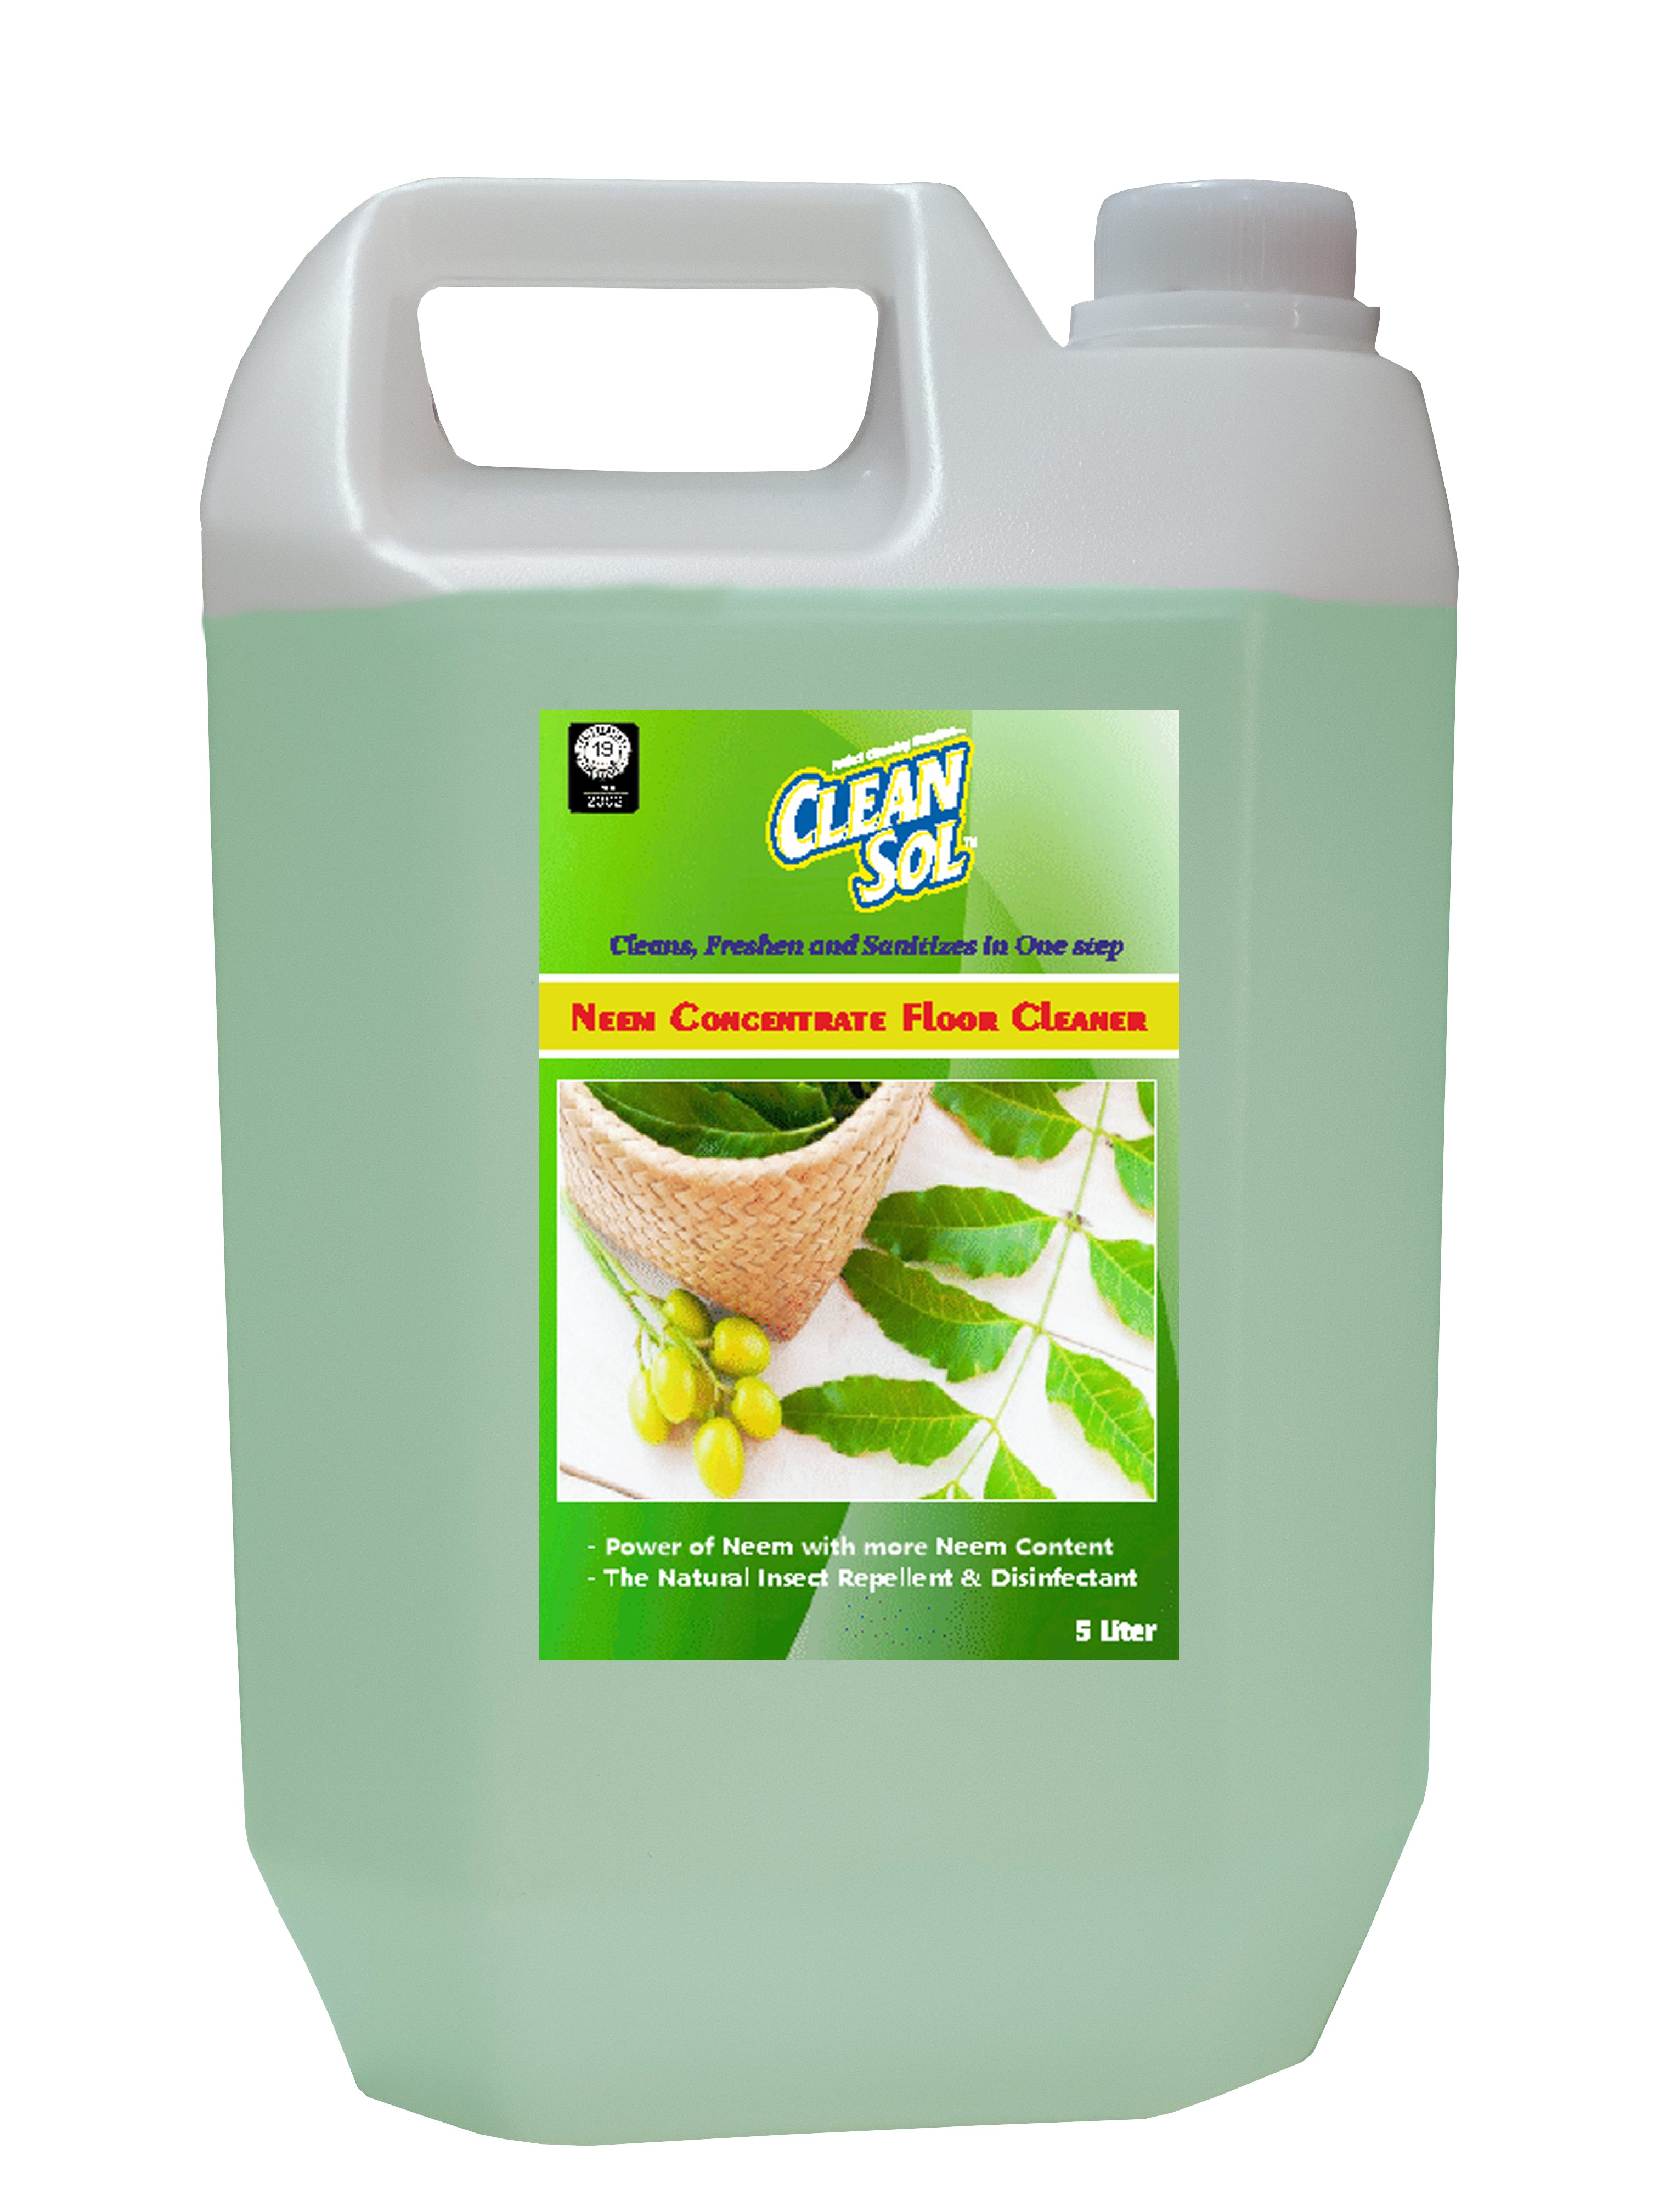 Cleansol Neem Floor Cleaner Liquid - 1 Liter